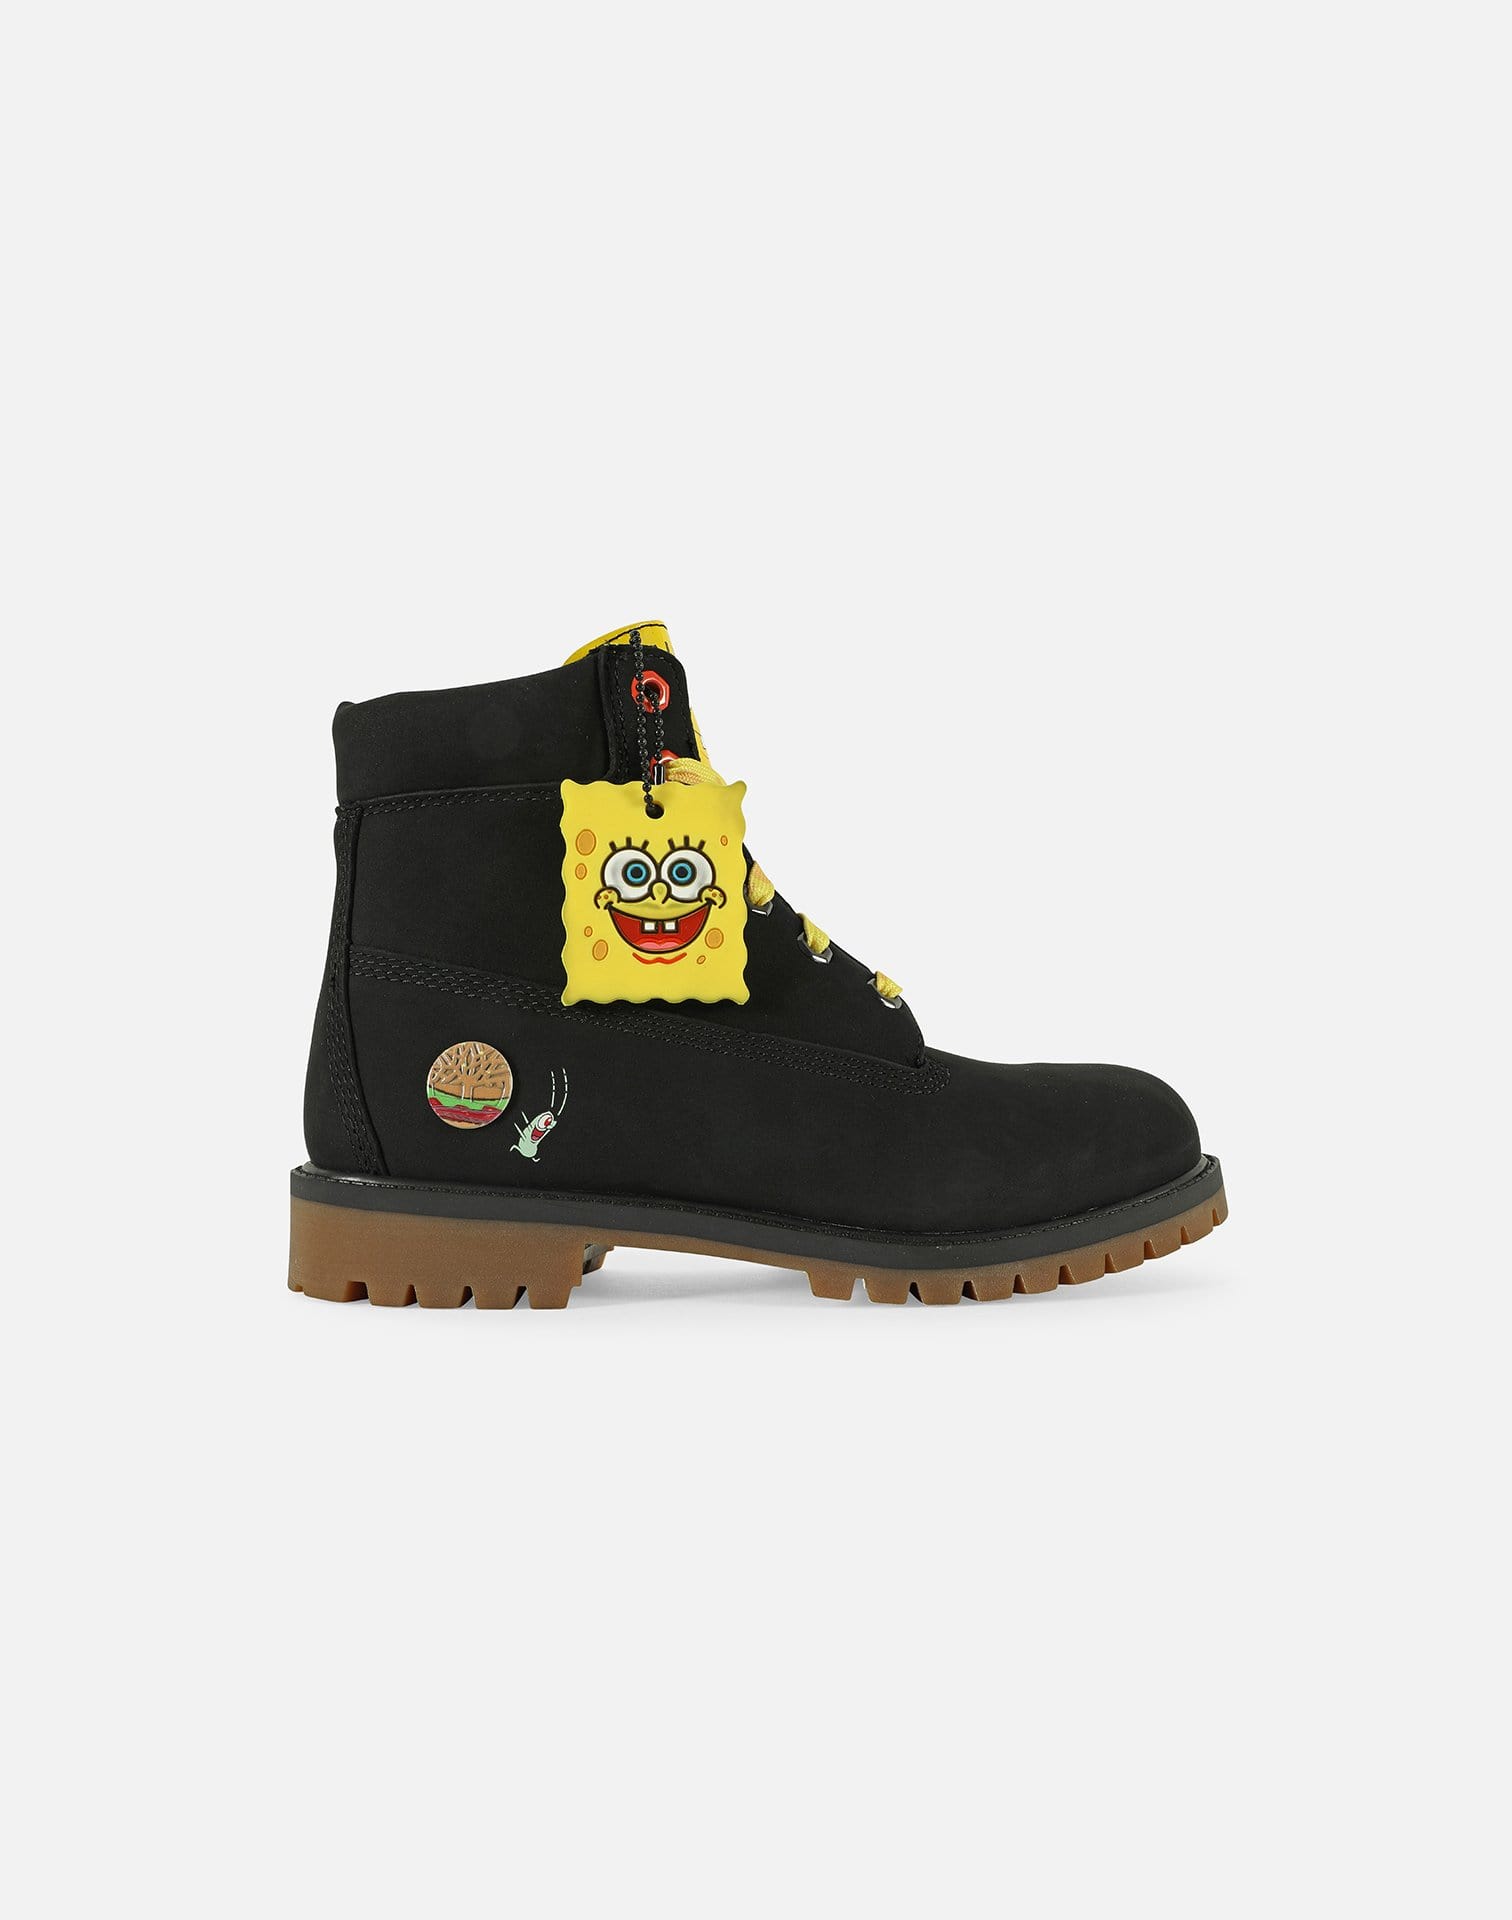 spongebob in rubber boots